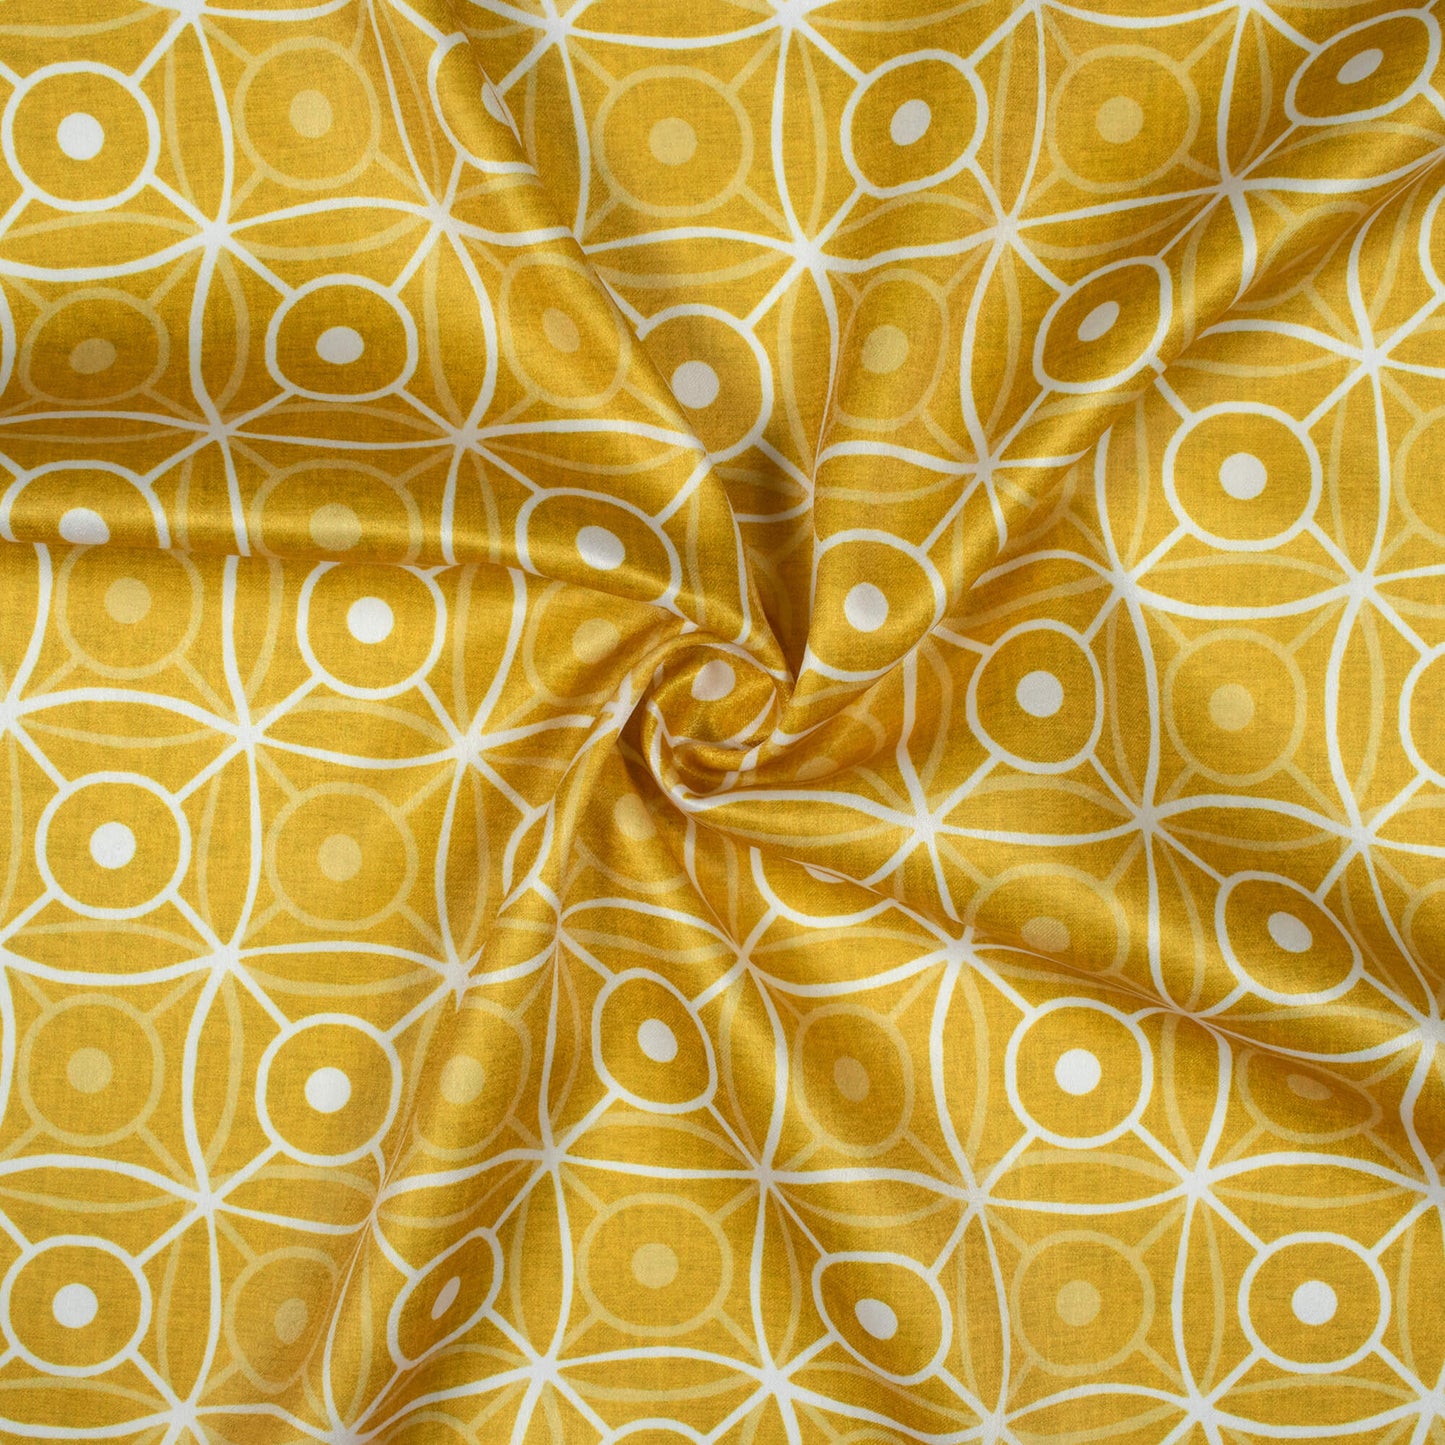 Tuscany Yellow And White Geometric Pattern Digital Print Lush Satin Fabric